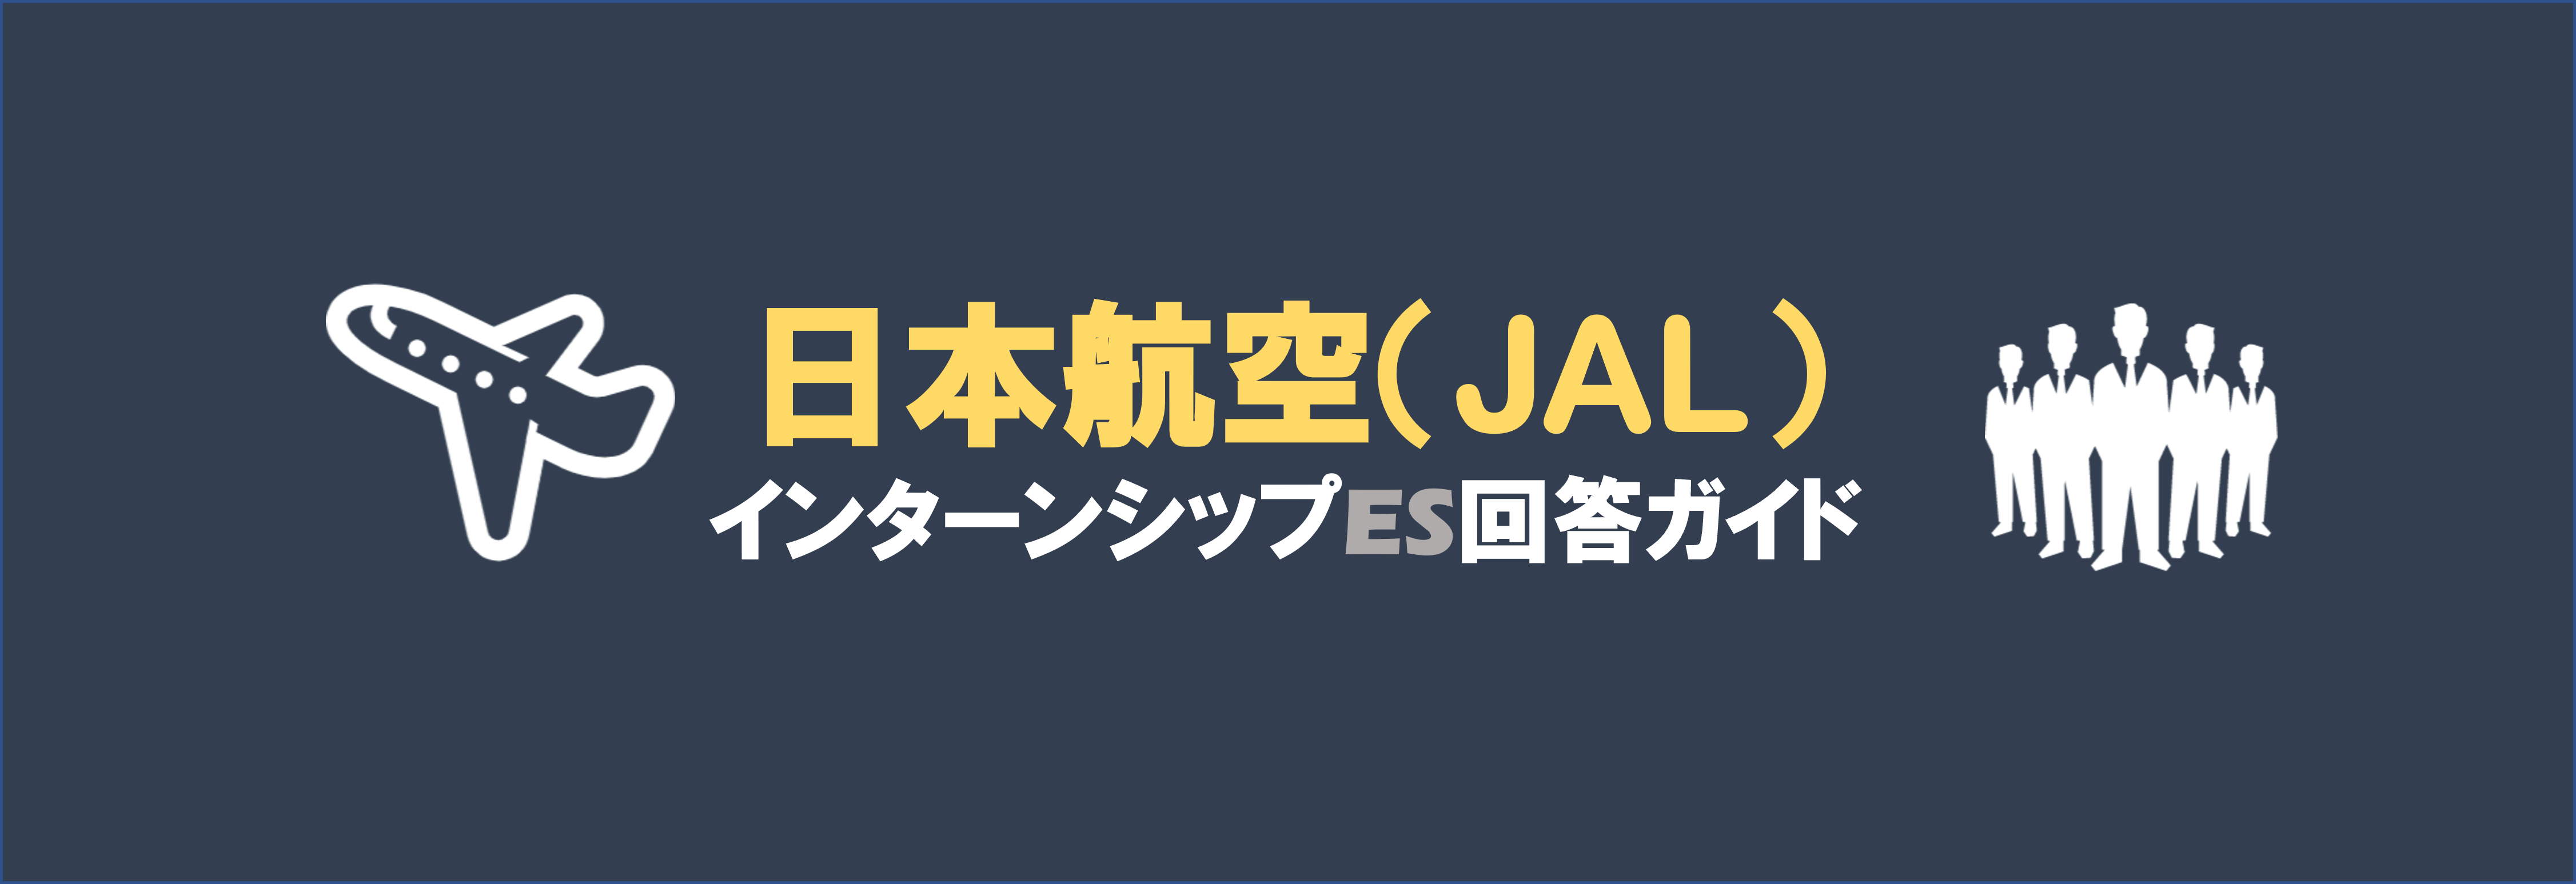 日本航空(JAL)のインターン内容とES選考突破方法|合格者ES付き